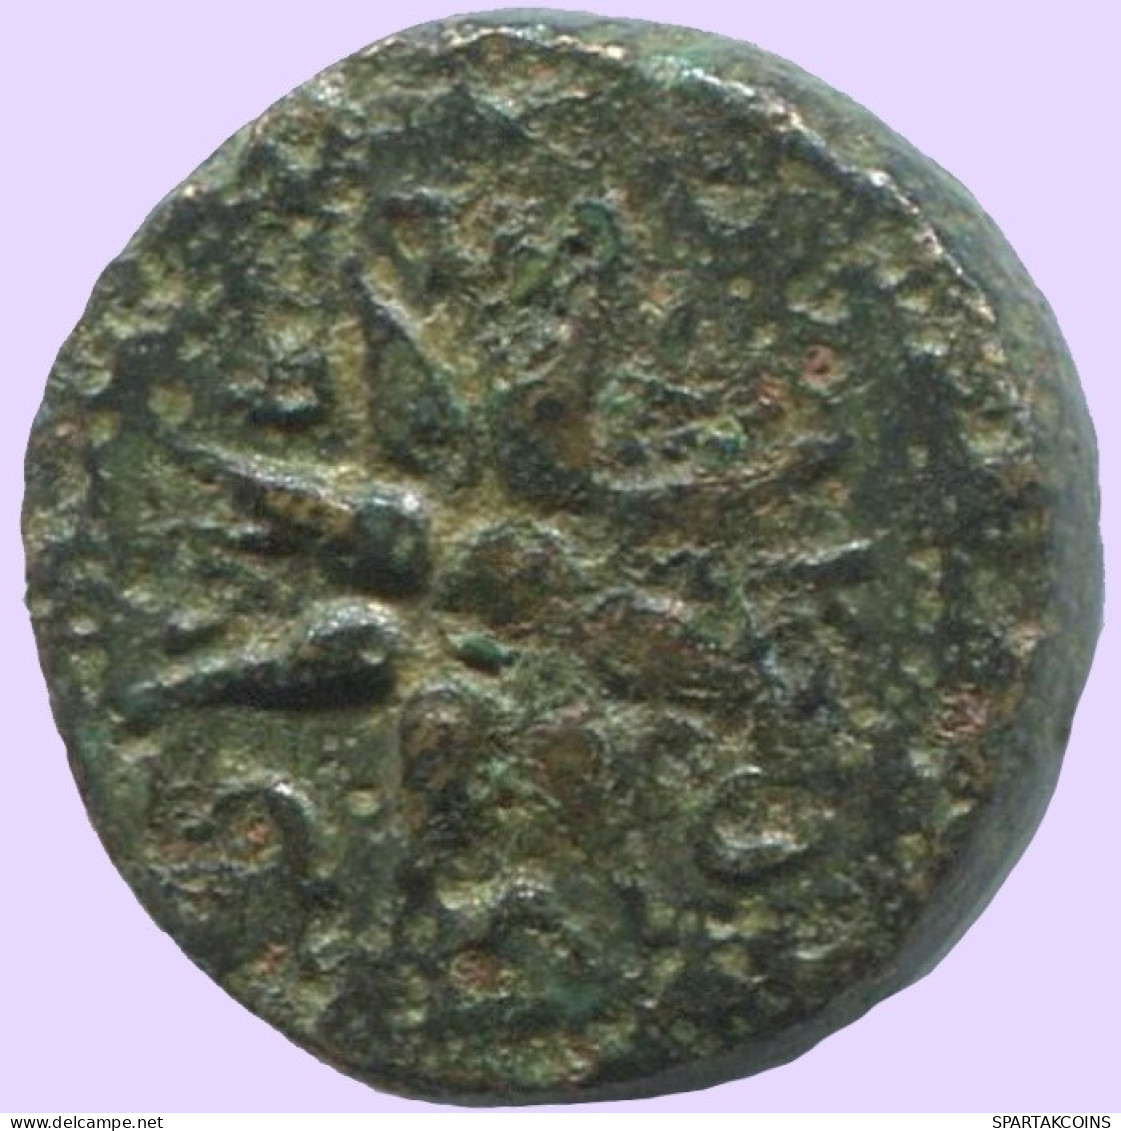 STAR Antiguo Auténtico Original GRIEGO Moneda 1.5g/10mm #ANT1671.10.E.A - Griechische Münzen